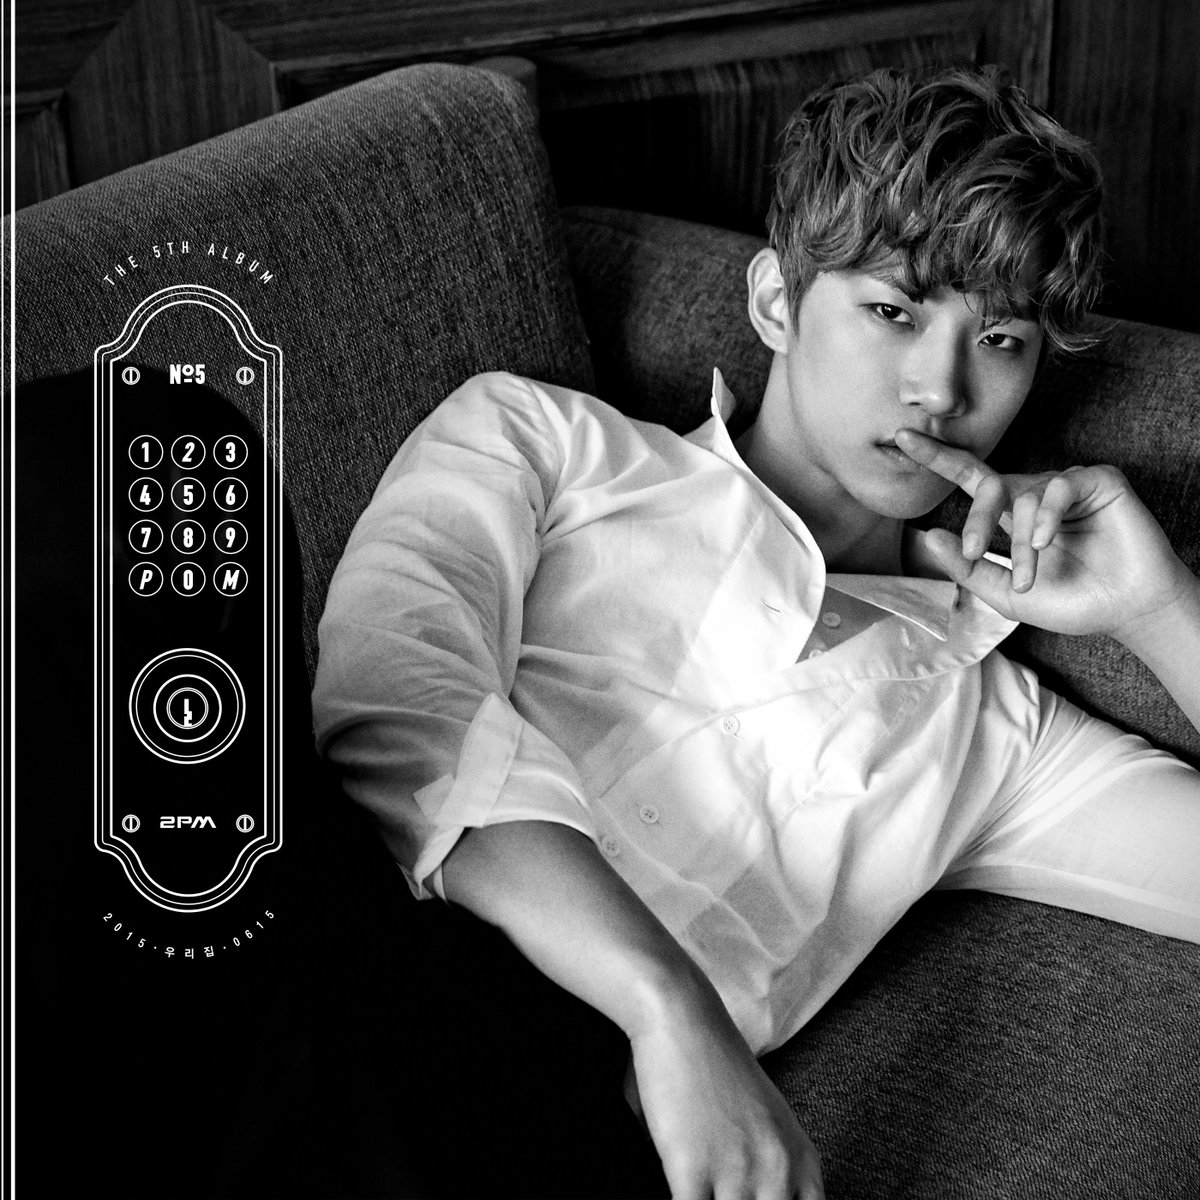 15일(월), 2PM 정규 앨범 5집 'No.5 (타이틀곡:우리집)' 발매 예정 | 인스티즈